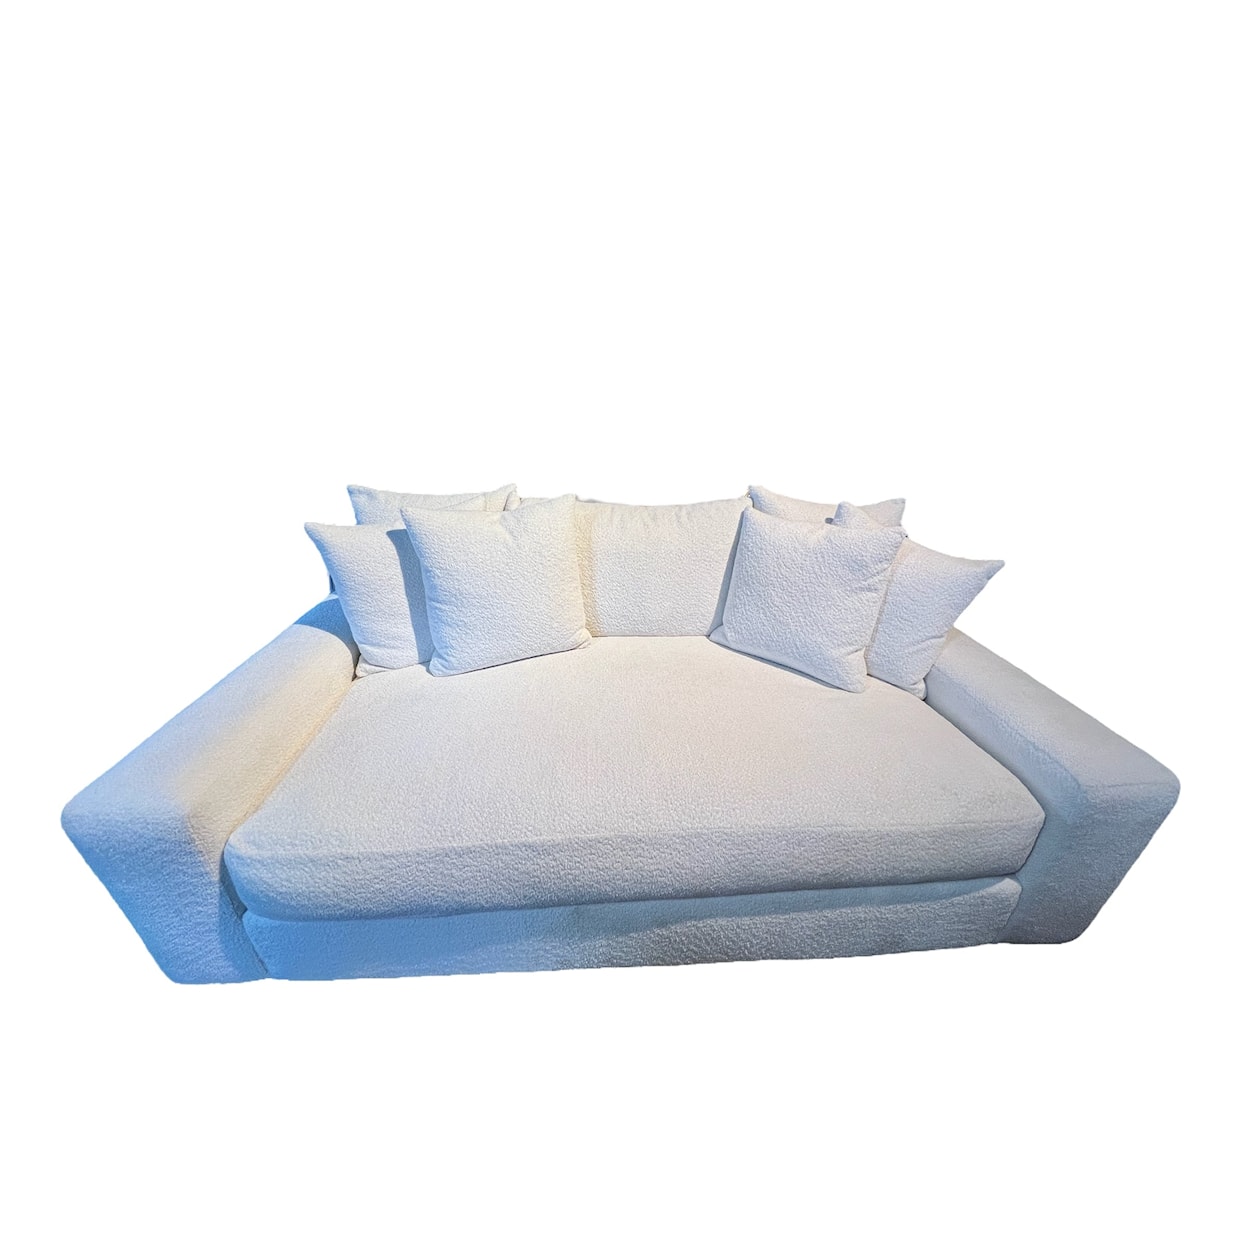 JMD Furniture 5200 5200 BENCH SOFA (1 CUSHION)